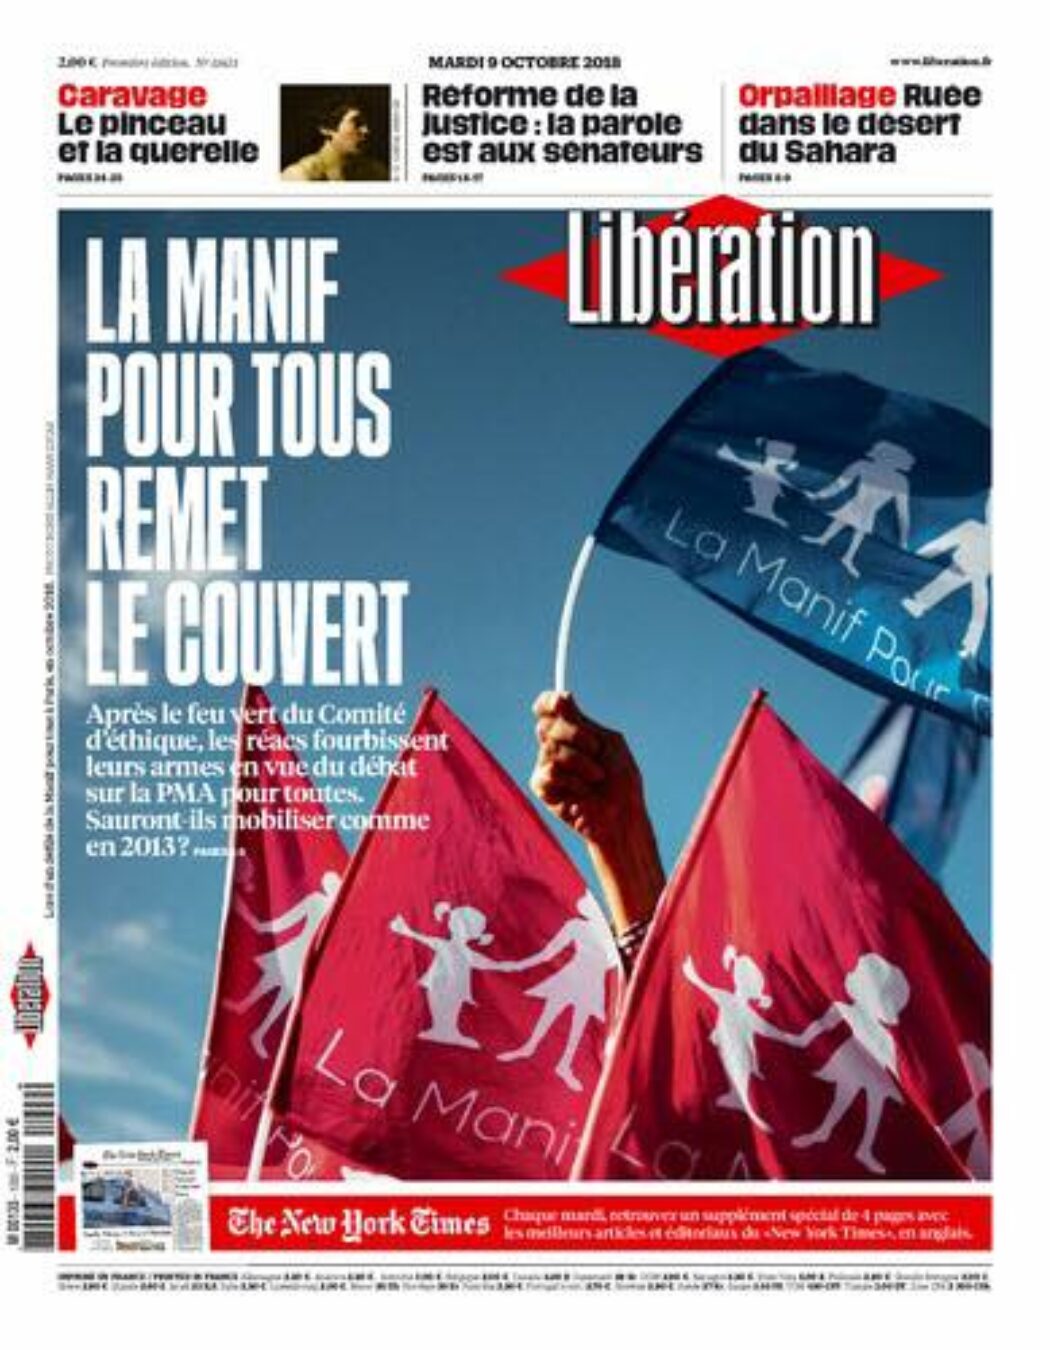 80 000 affiches LMPT ont donc été diffusées partout en France aujourd’hui !